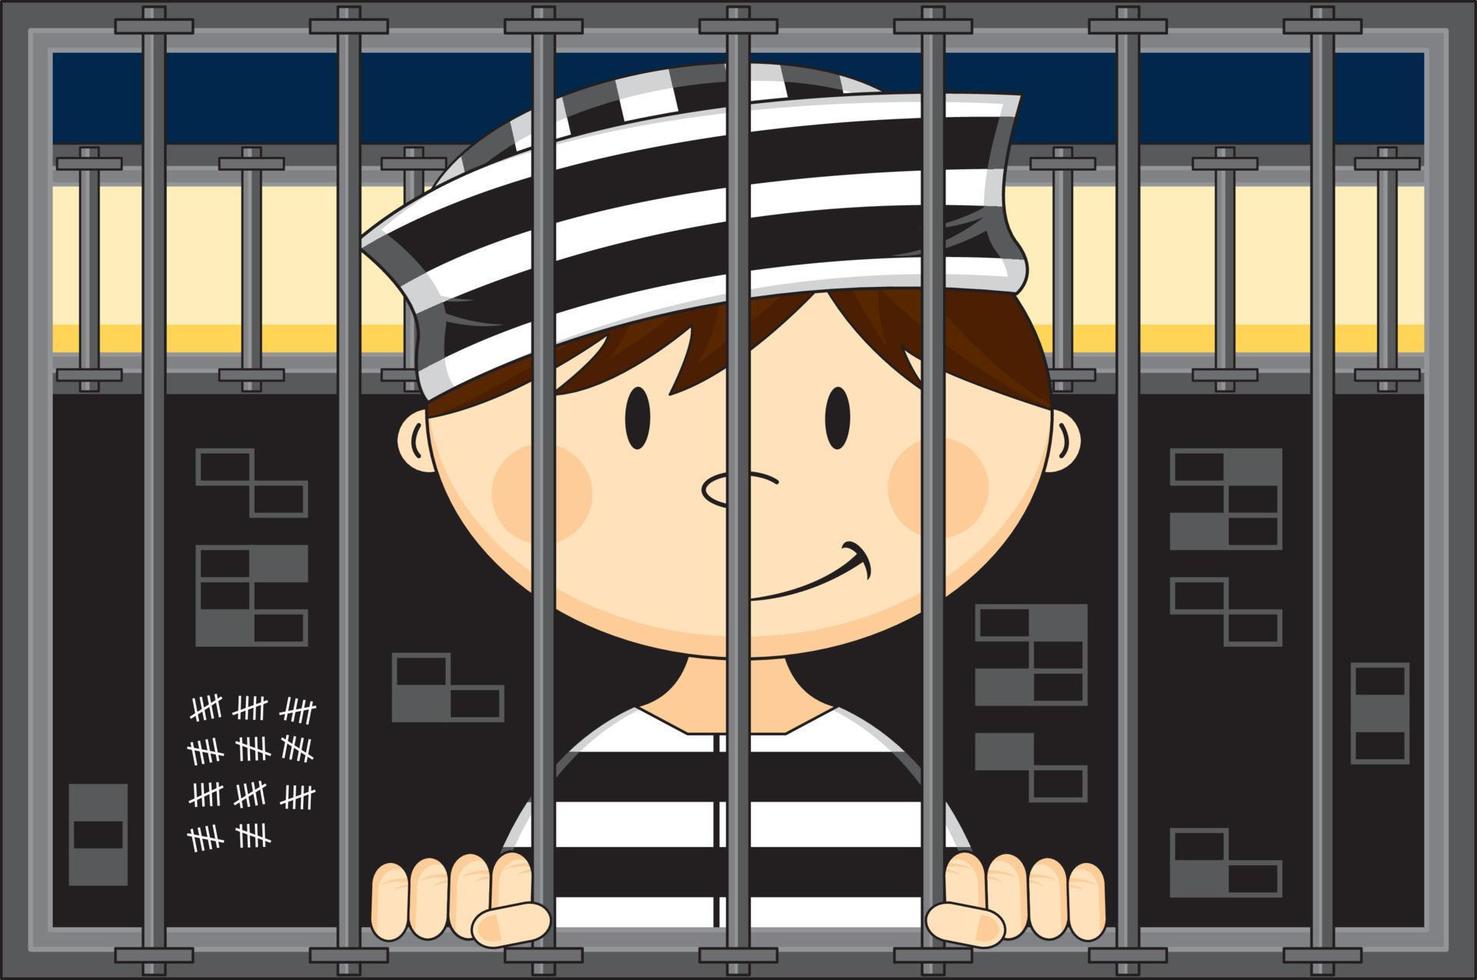 dessin animé prisonnier portant classique rayé prison uniforme dans prison cellule vecteur